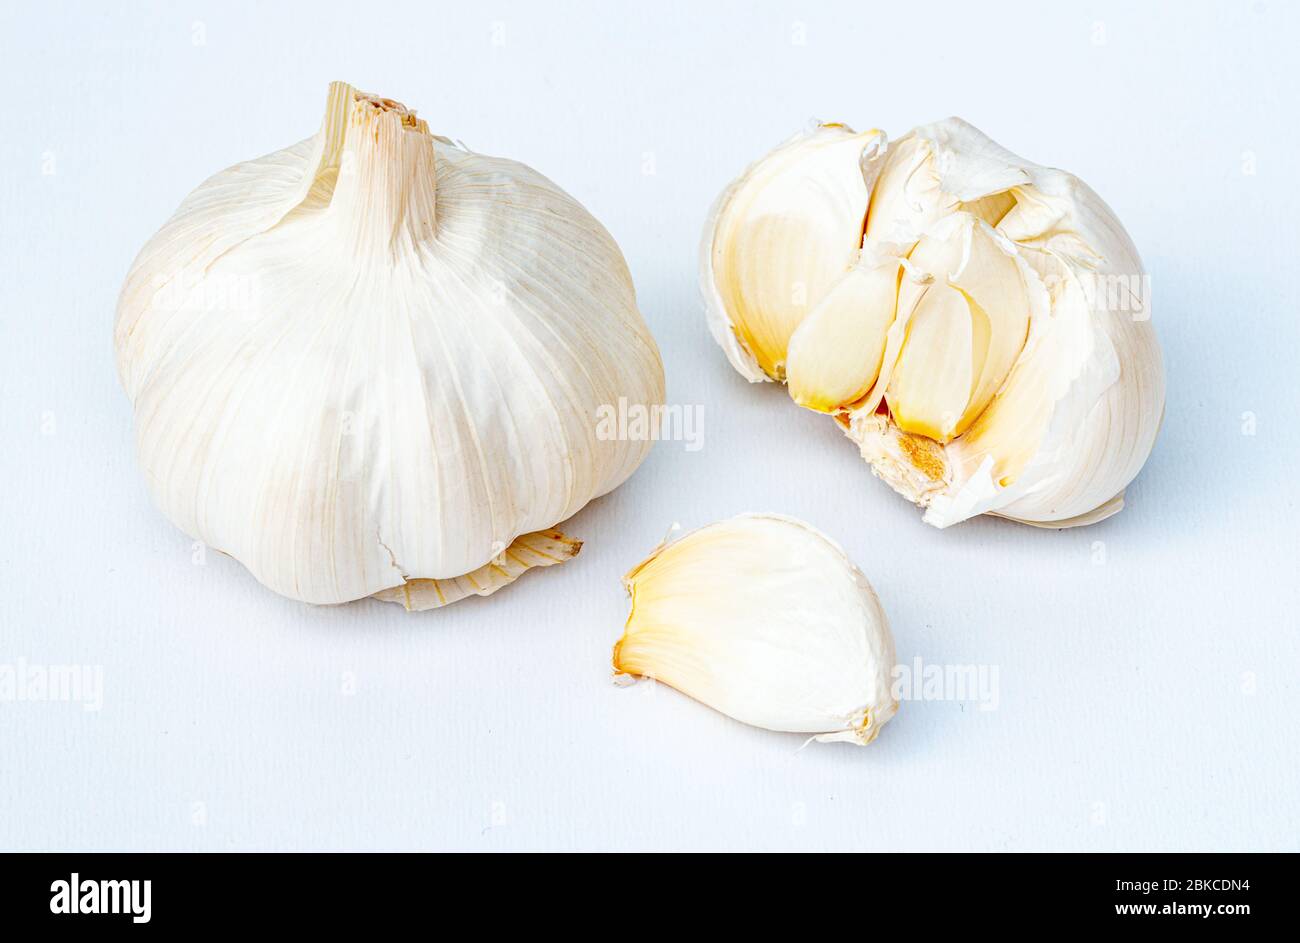 Bulbo d'aglio fresco e spicchi su fondo bianco. L'aglio è usato in tutto il mondo come spezia per condimento del cibo e come medicina tradizionale. Foto Stock